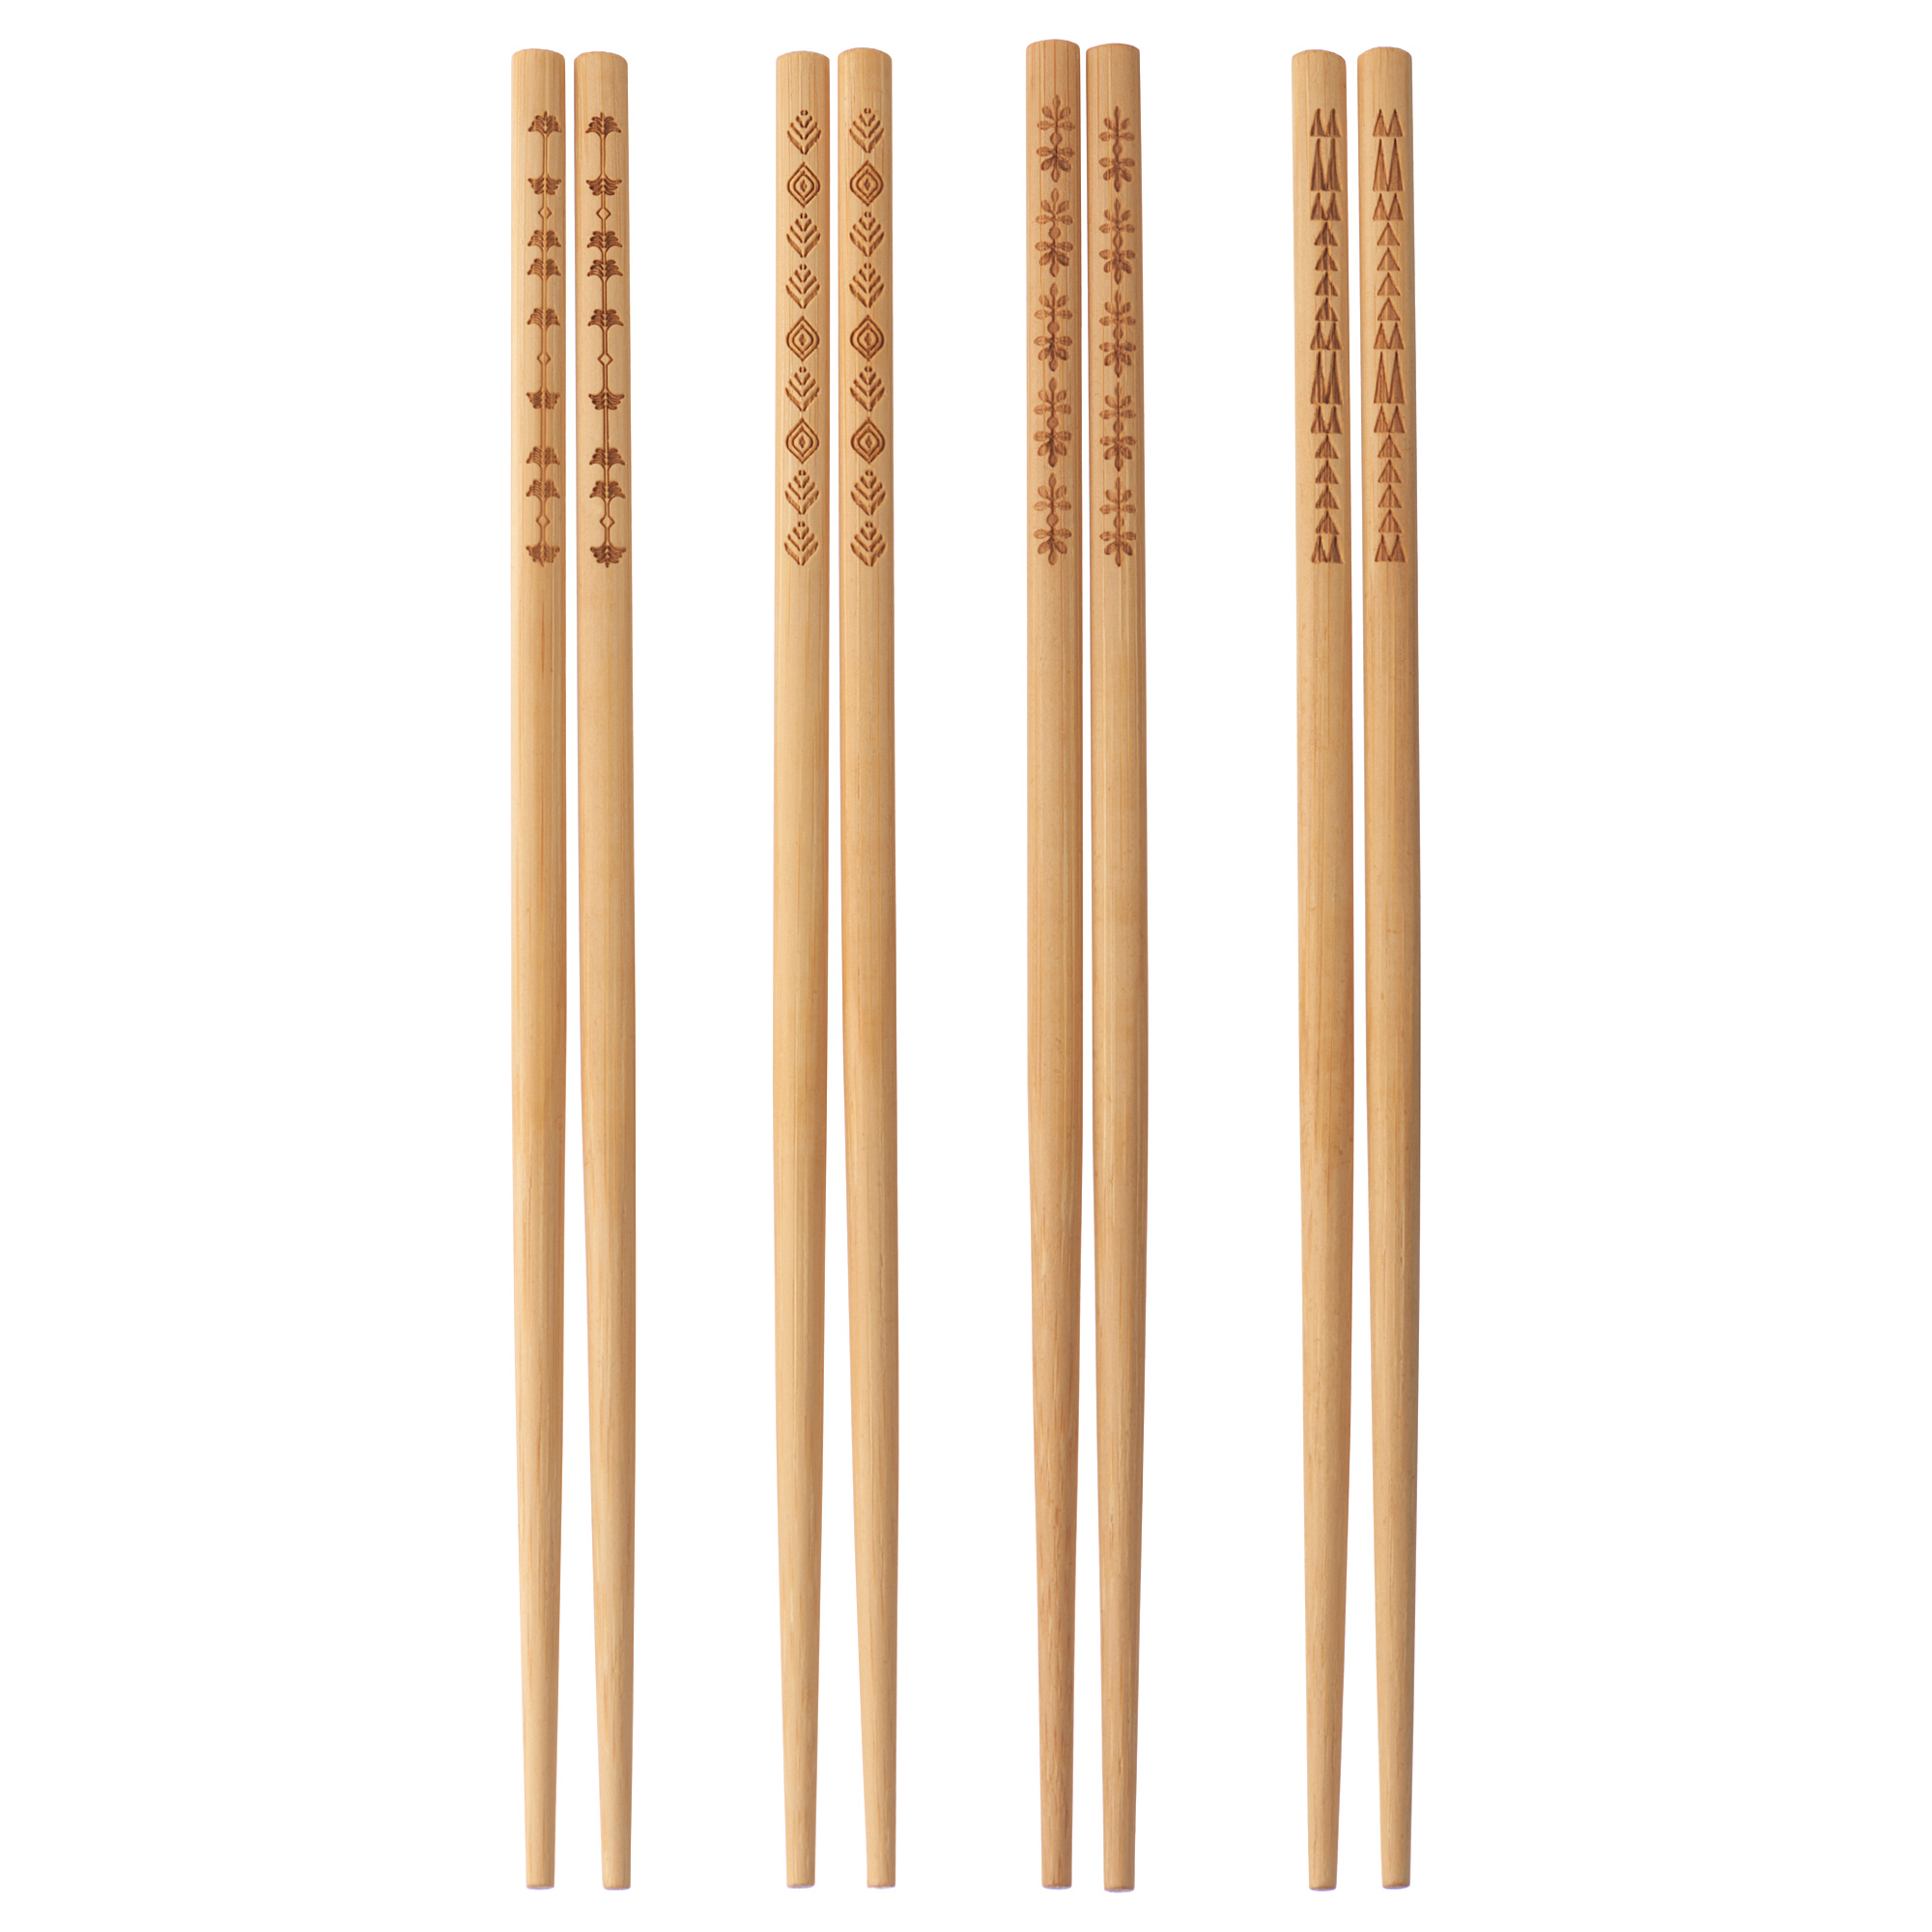 TREBENT chopsticks 4 pairs